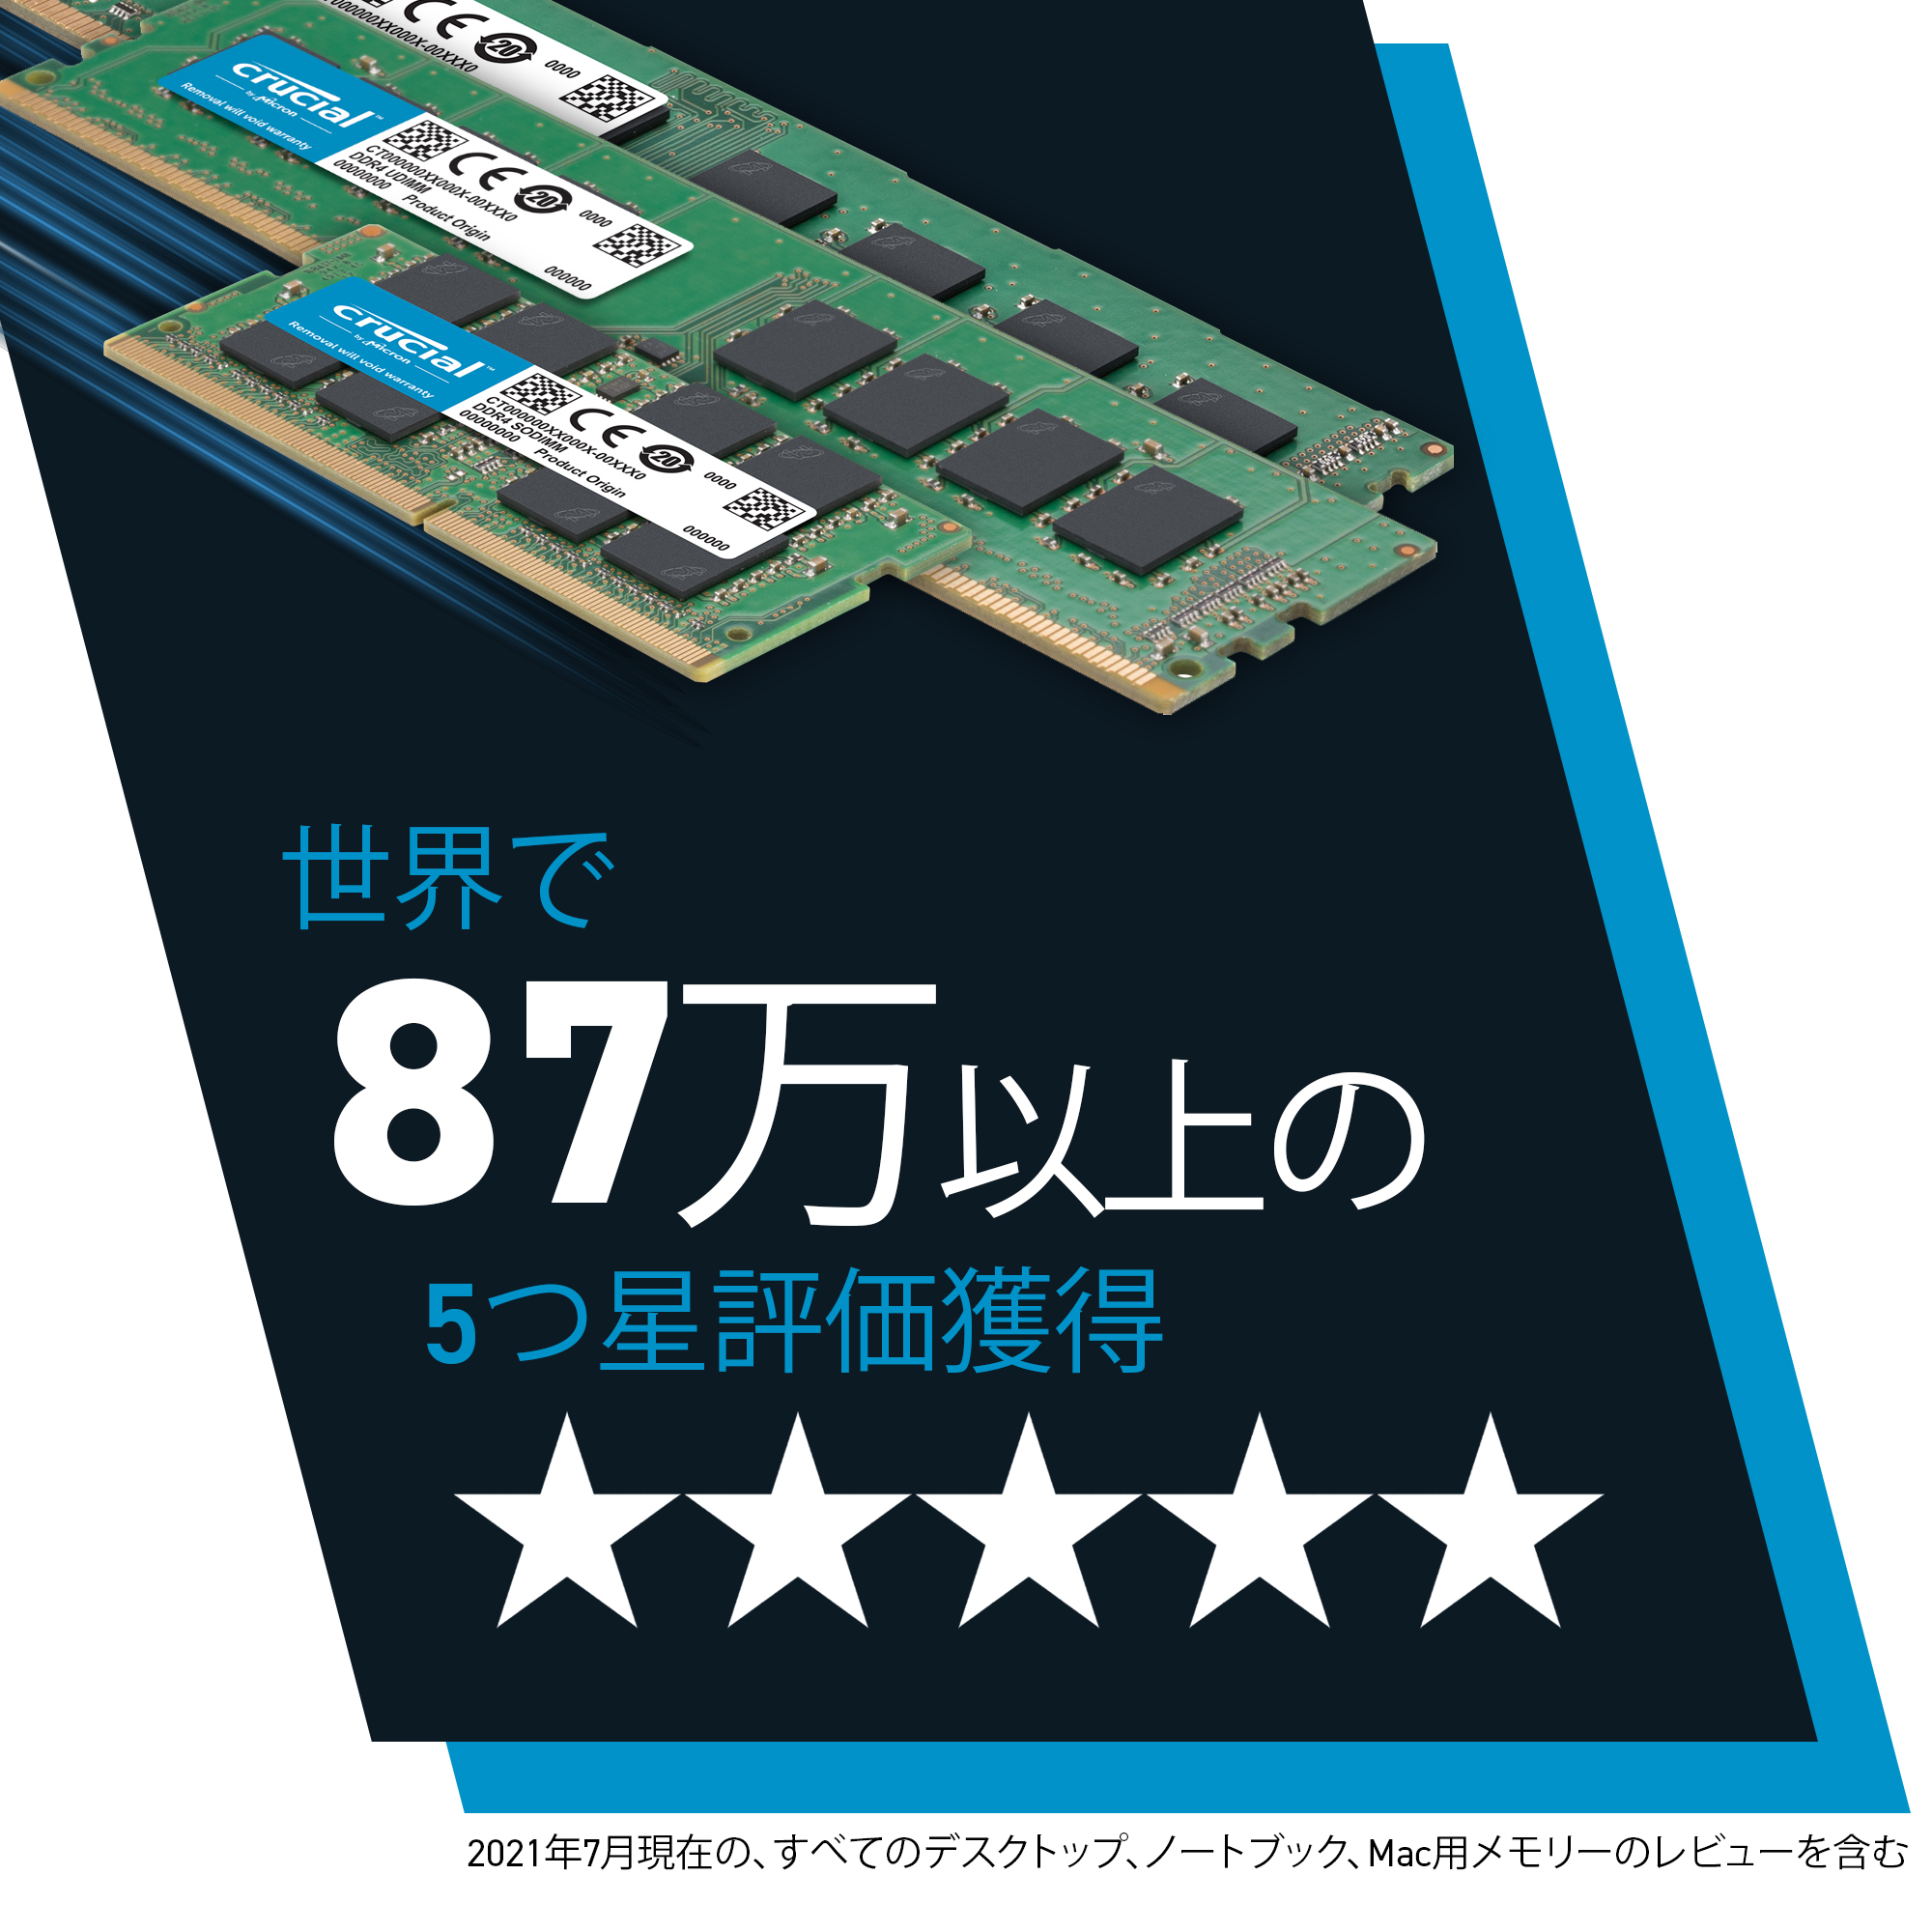 魅了 crucial ノートPC用増設メモリ 4GB 4GBx1枚 DDR4 2400MT s PC4-19200 CL17 SODIMM  260pin CT4G4SFS824A